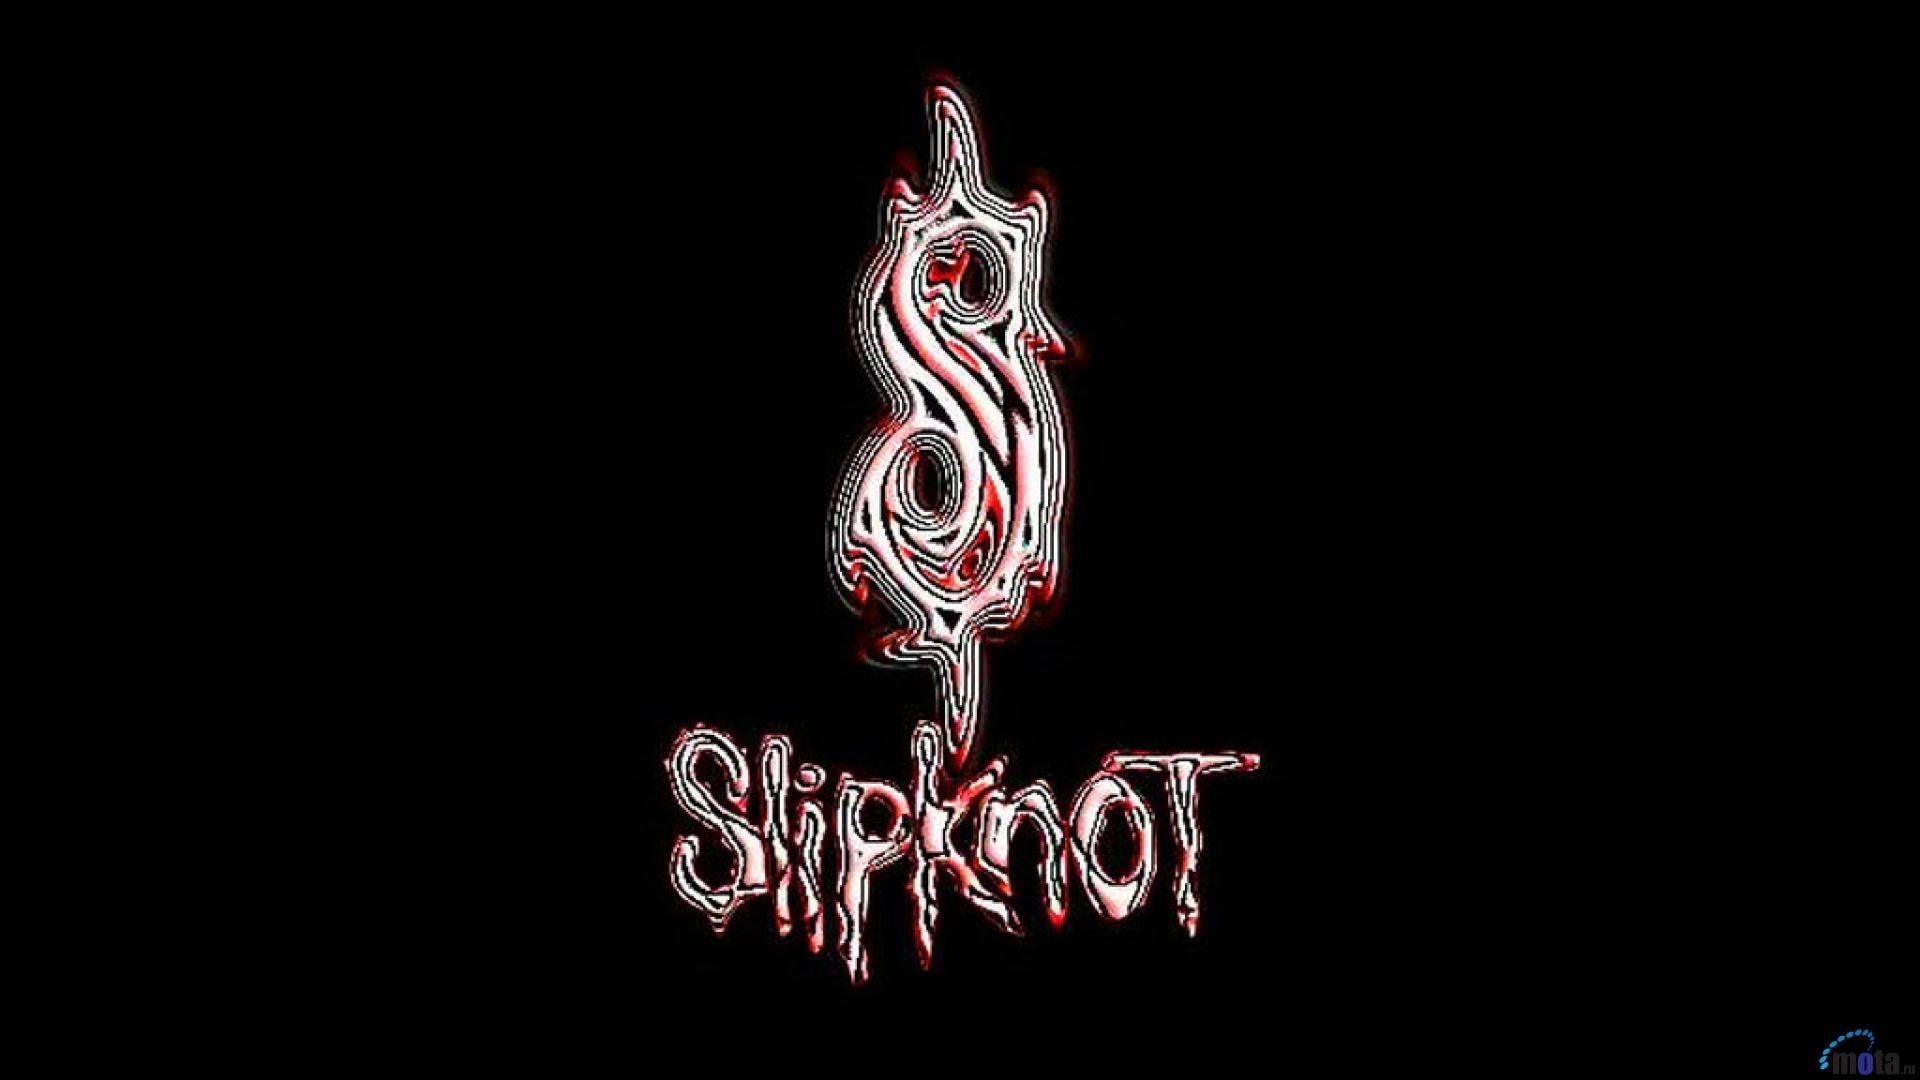 Slipknot Logo Wallpapers - Top Free Slipknot Logo Backgrounds ...